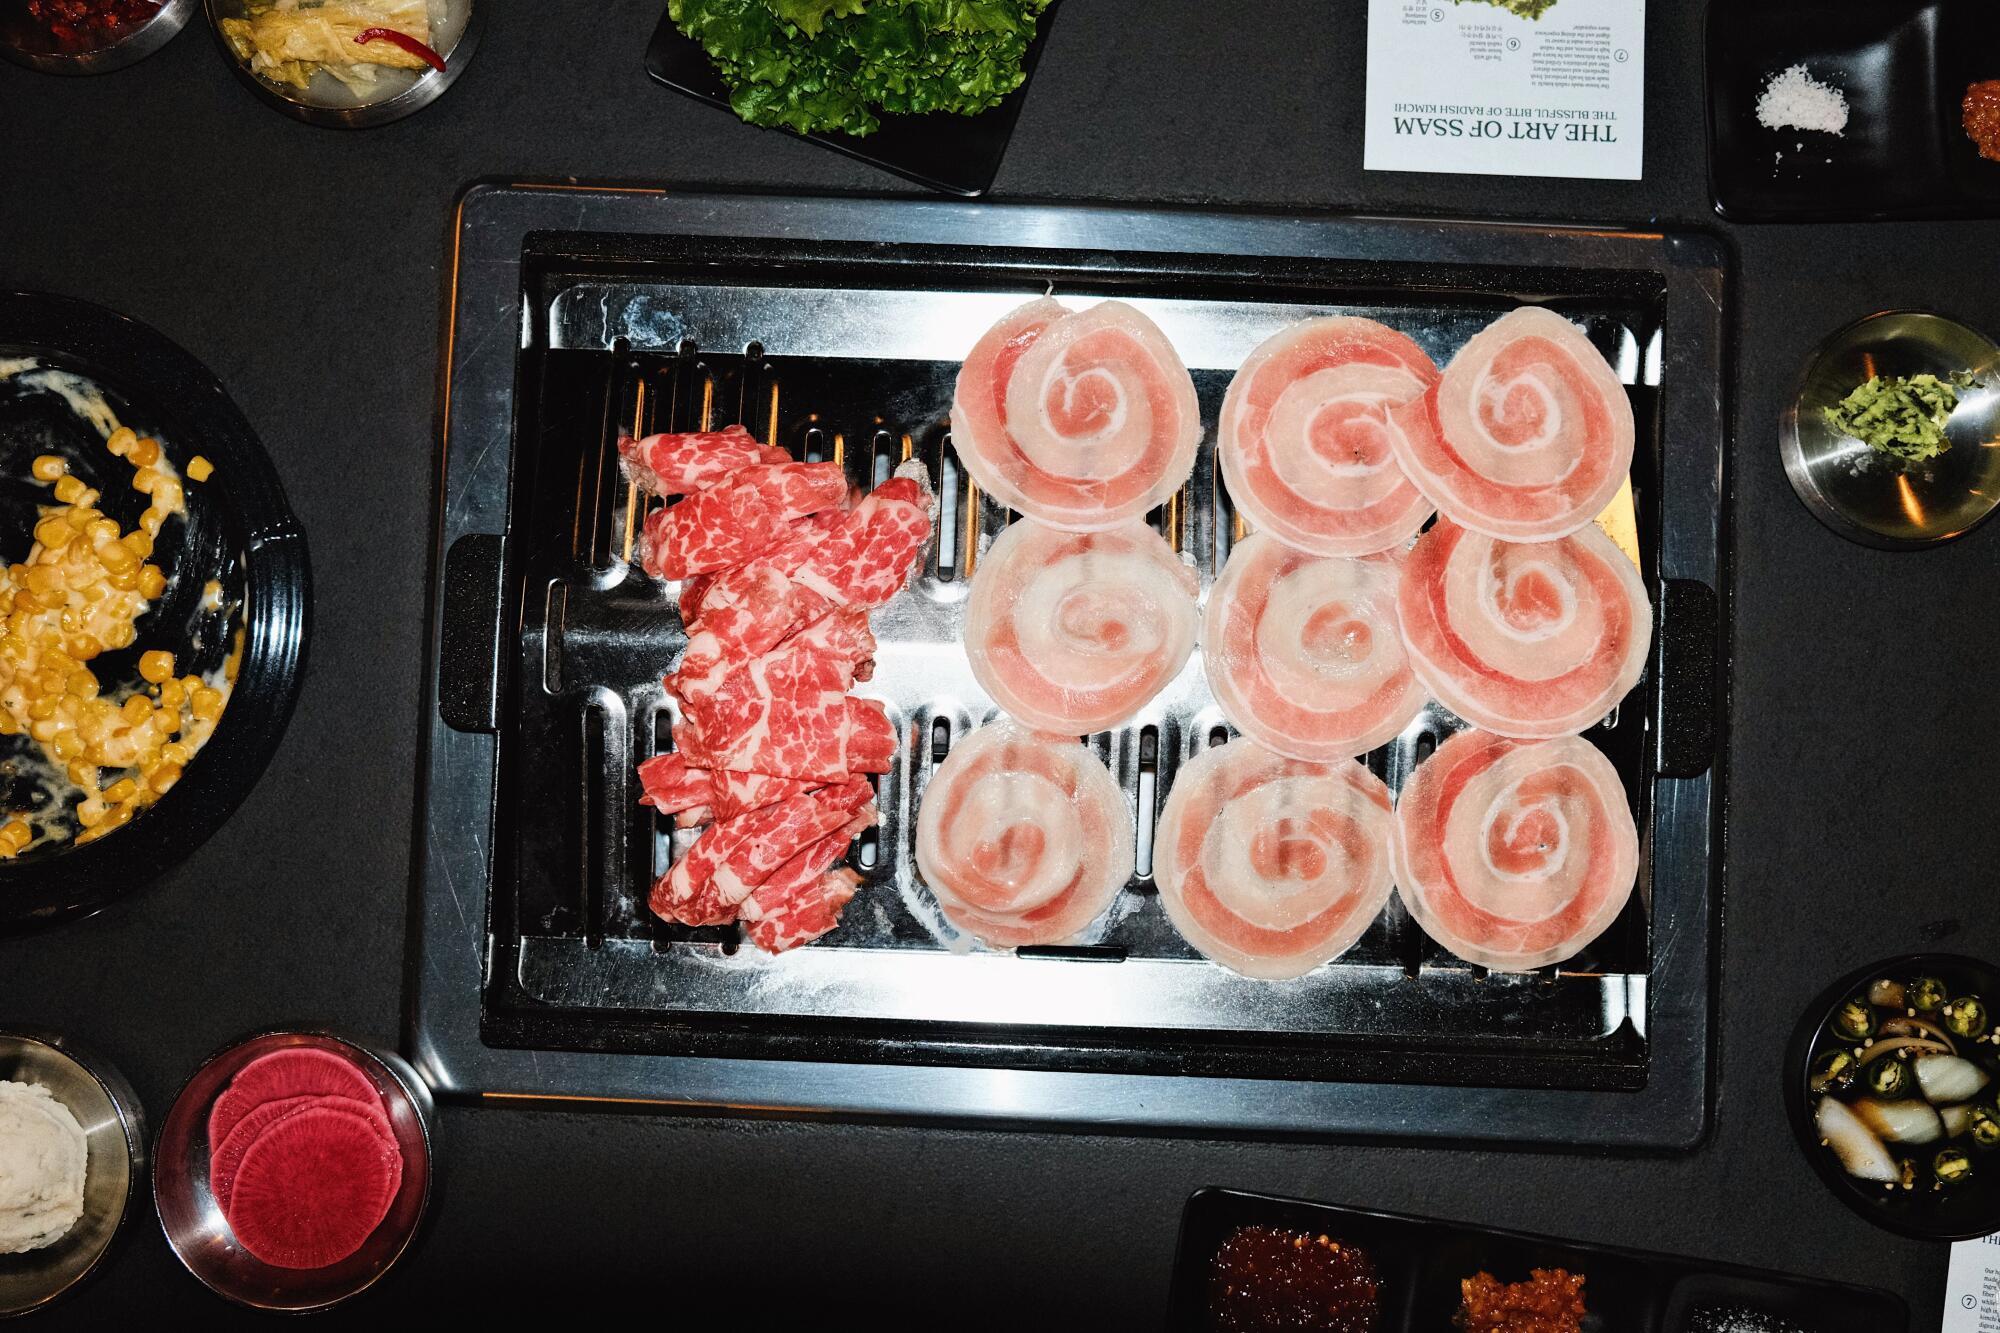 Origin Korean BBQ 的烧烤架俯视照片：一半是牛胸肉，另一半是五花肉盘。 班禅围绕它。